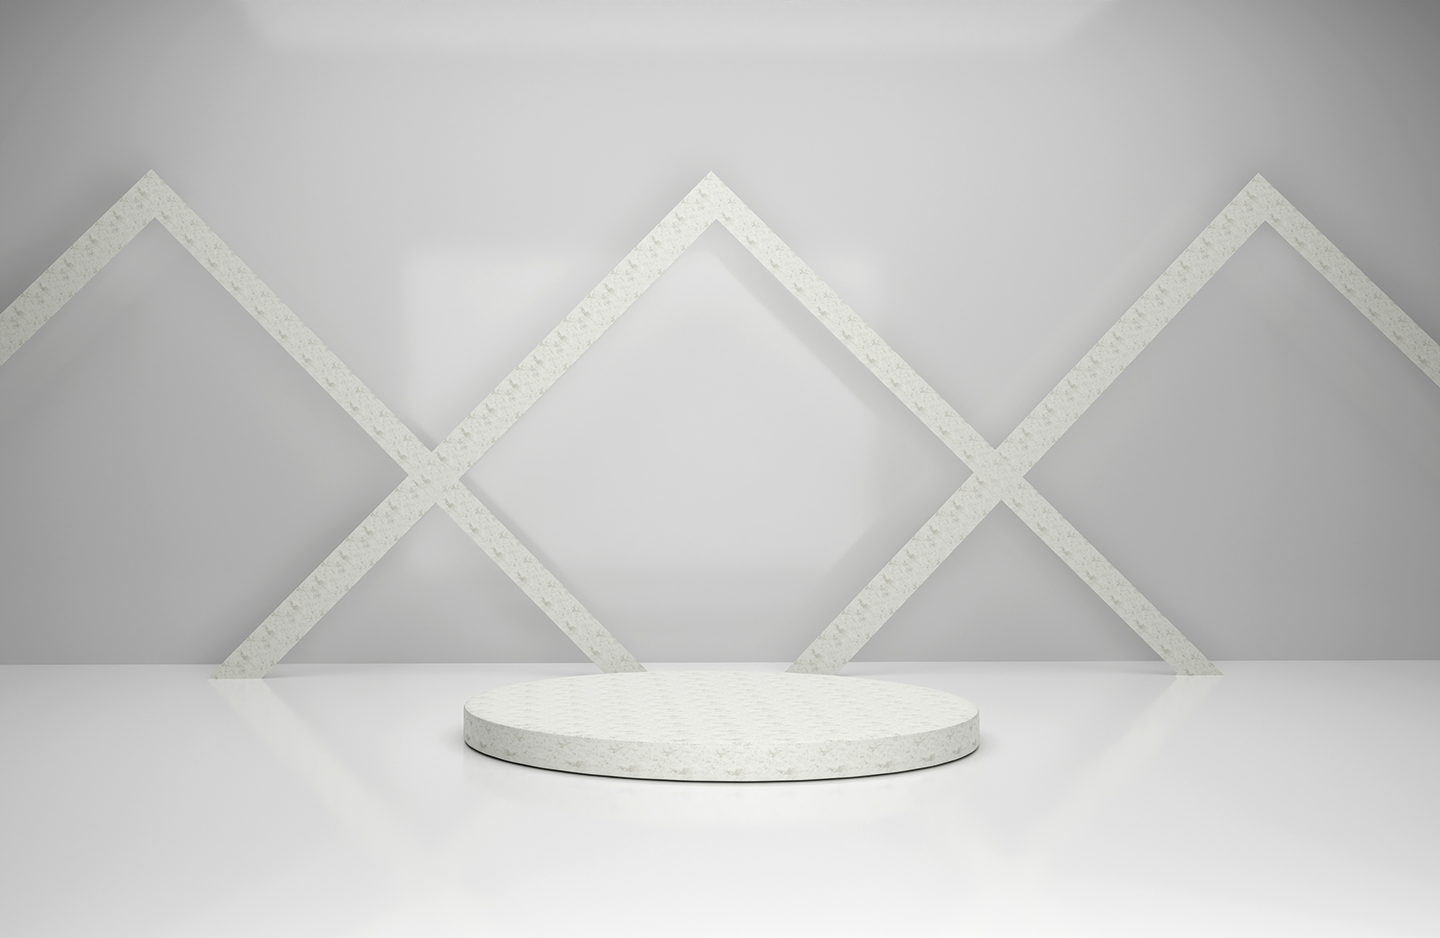 14 Product Display Podium Backgrounds, white podium on white background.